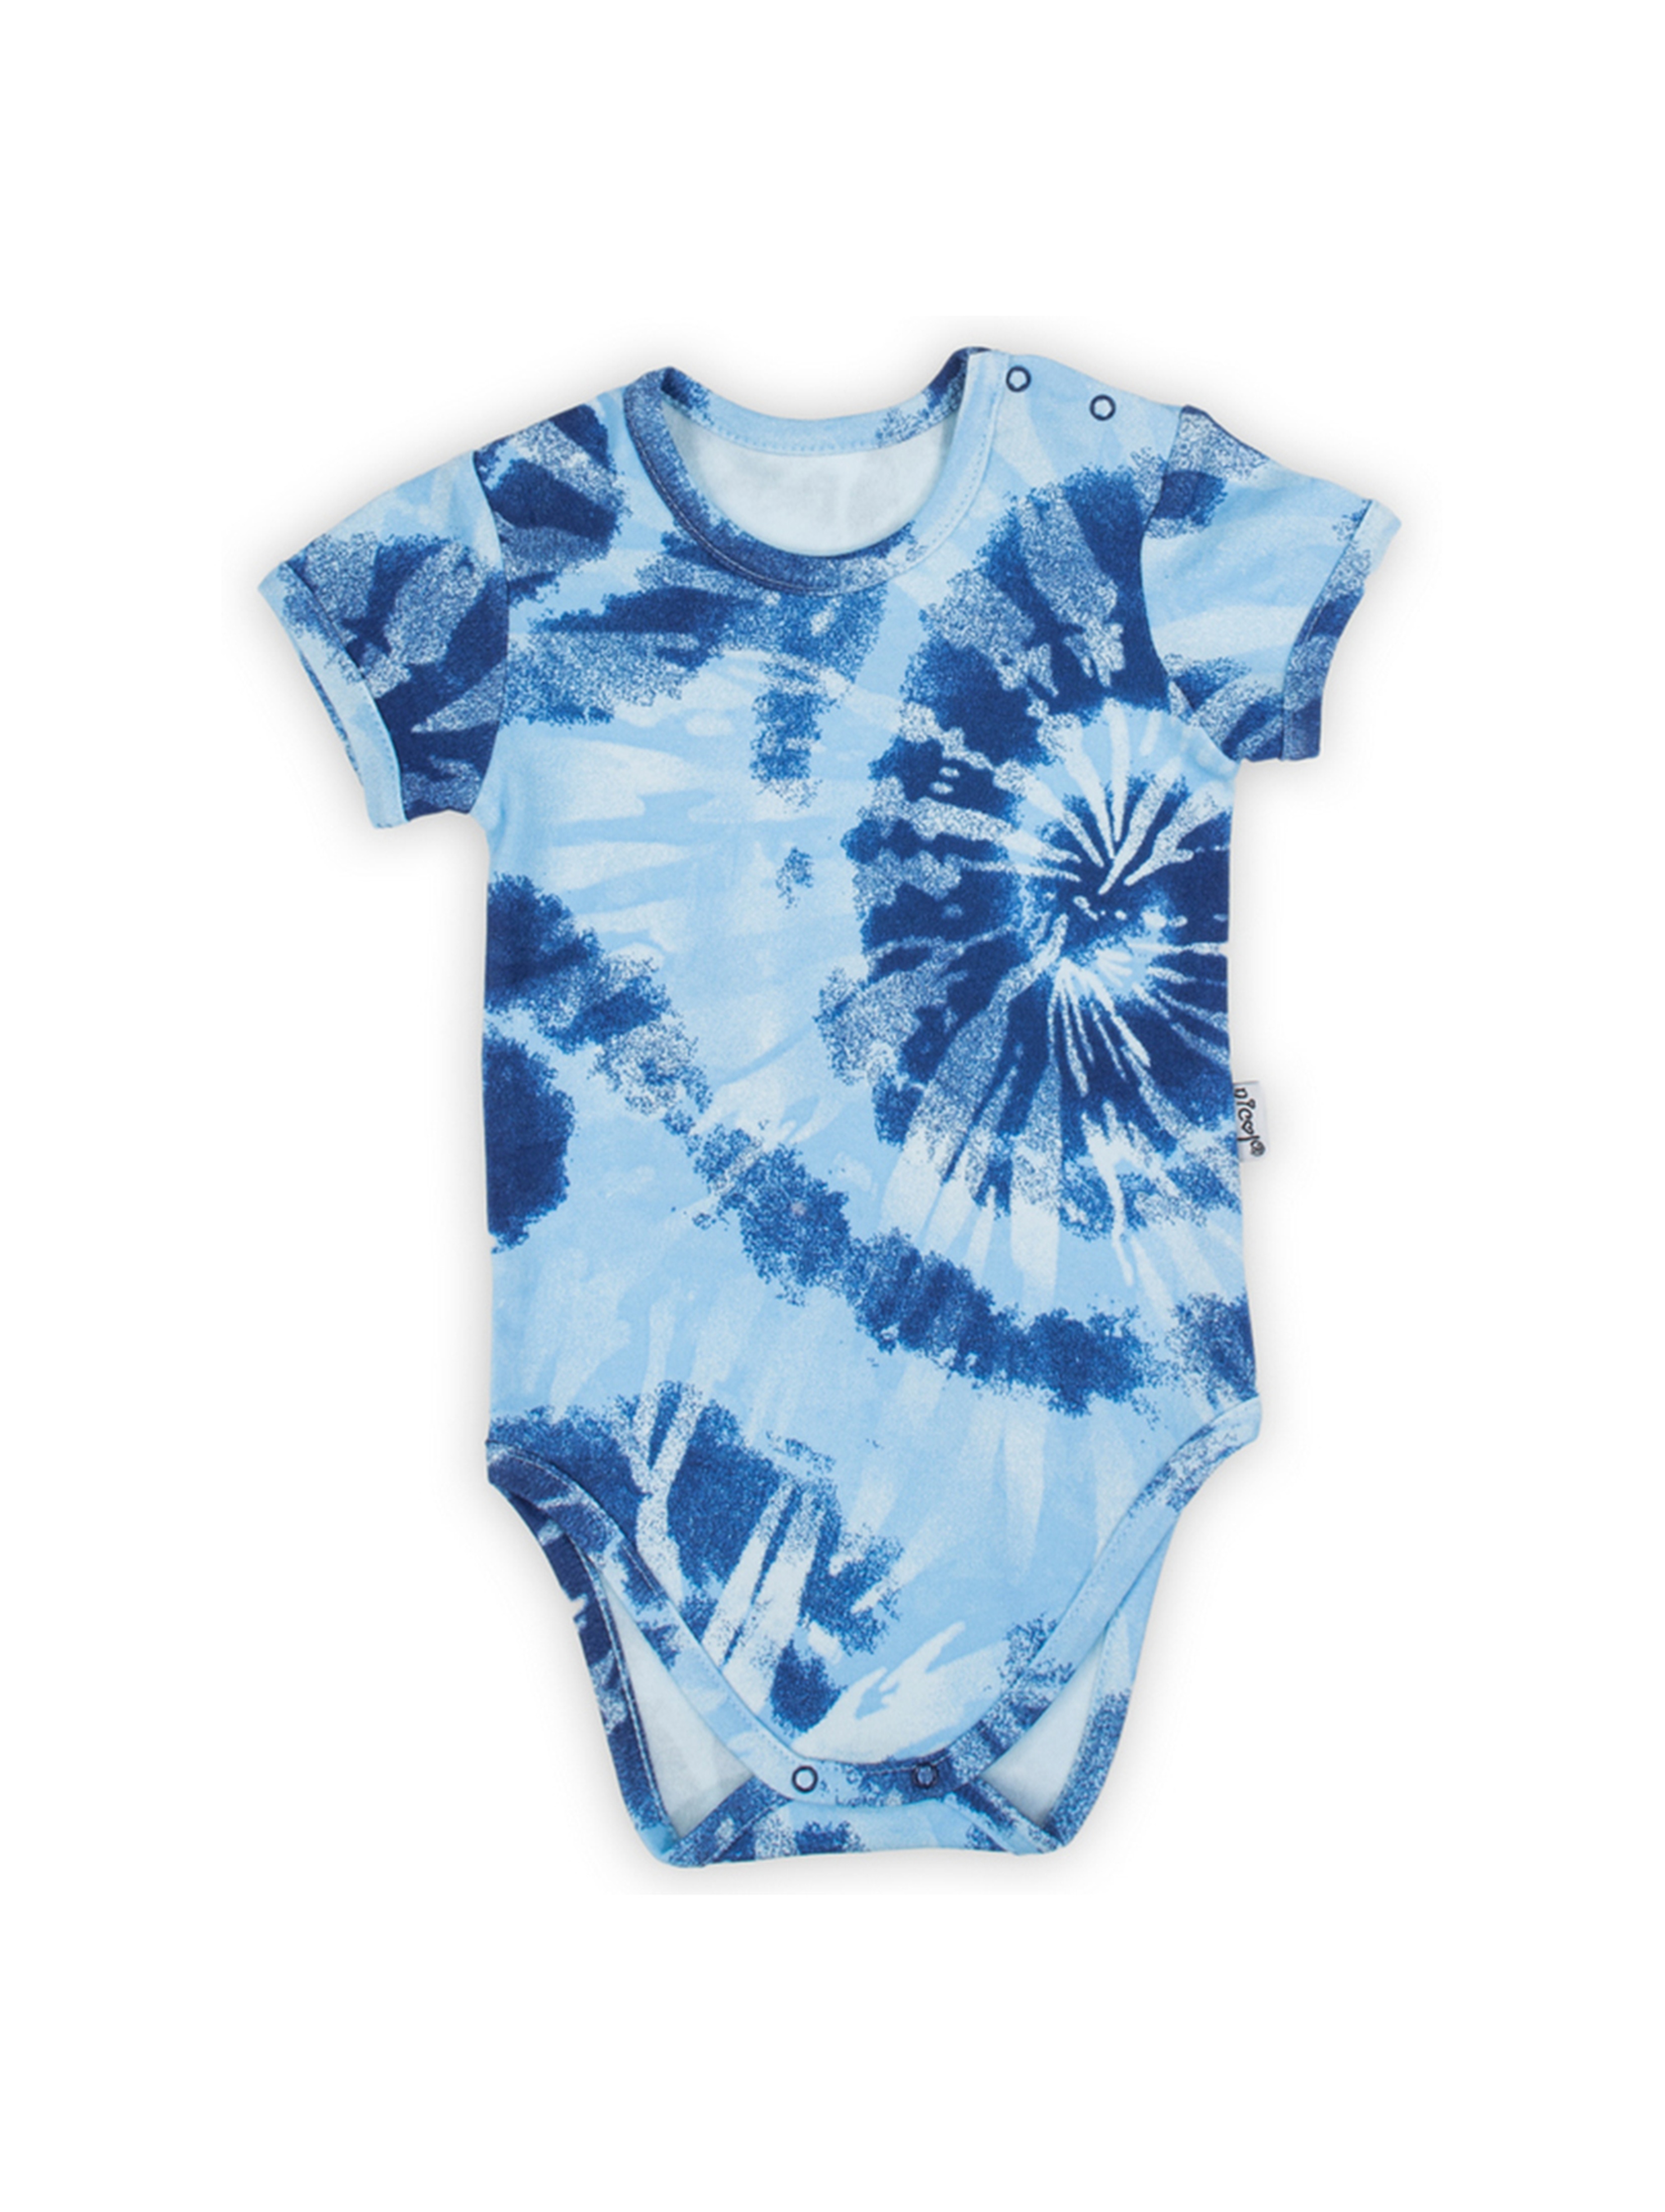 Bawełniane body niemowlęce we wzory niebieskie